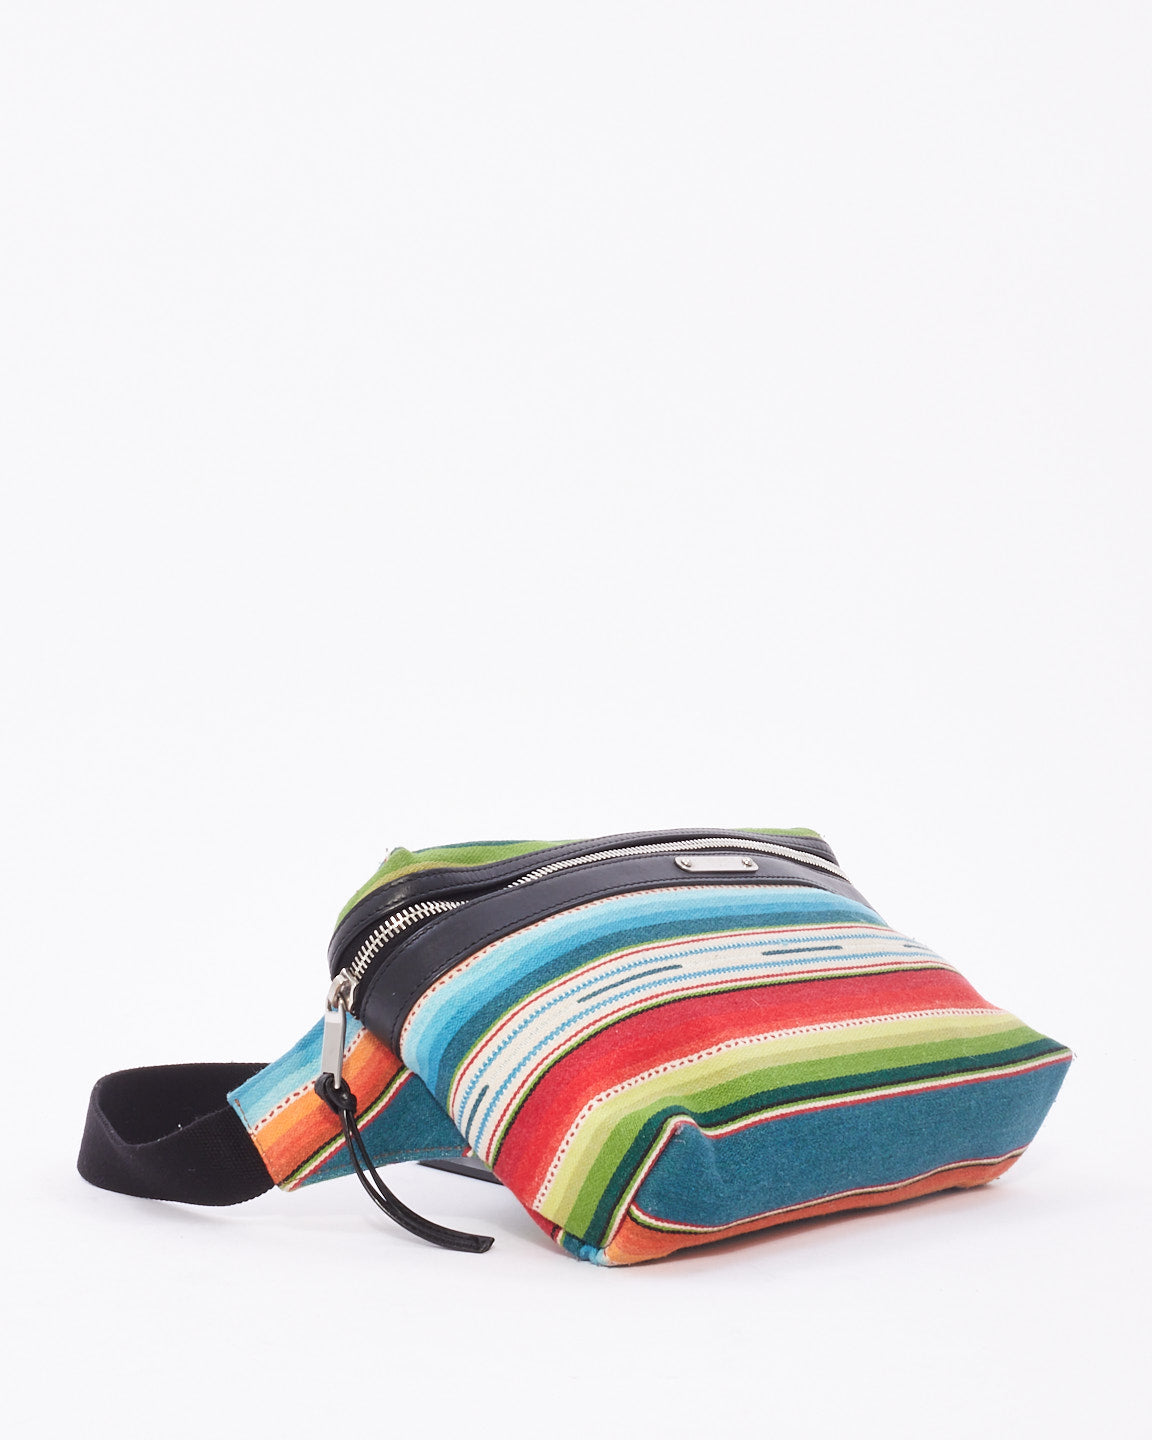 Saint Laurent Multi Colorful City Adjustable Belt Bag